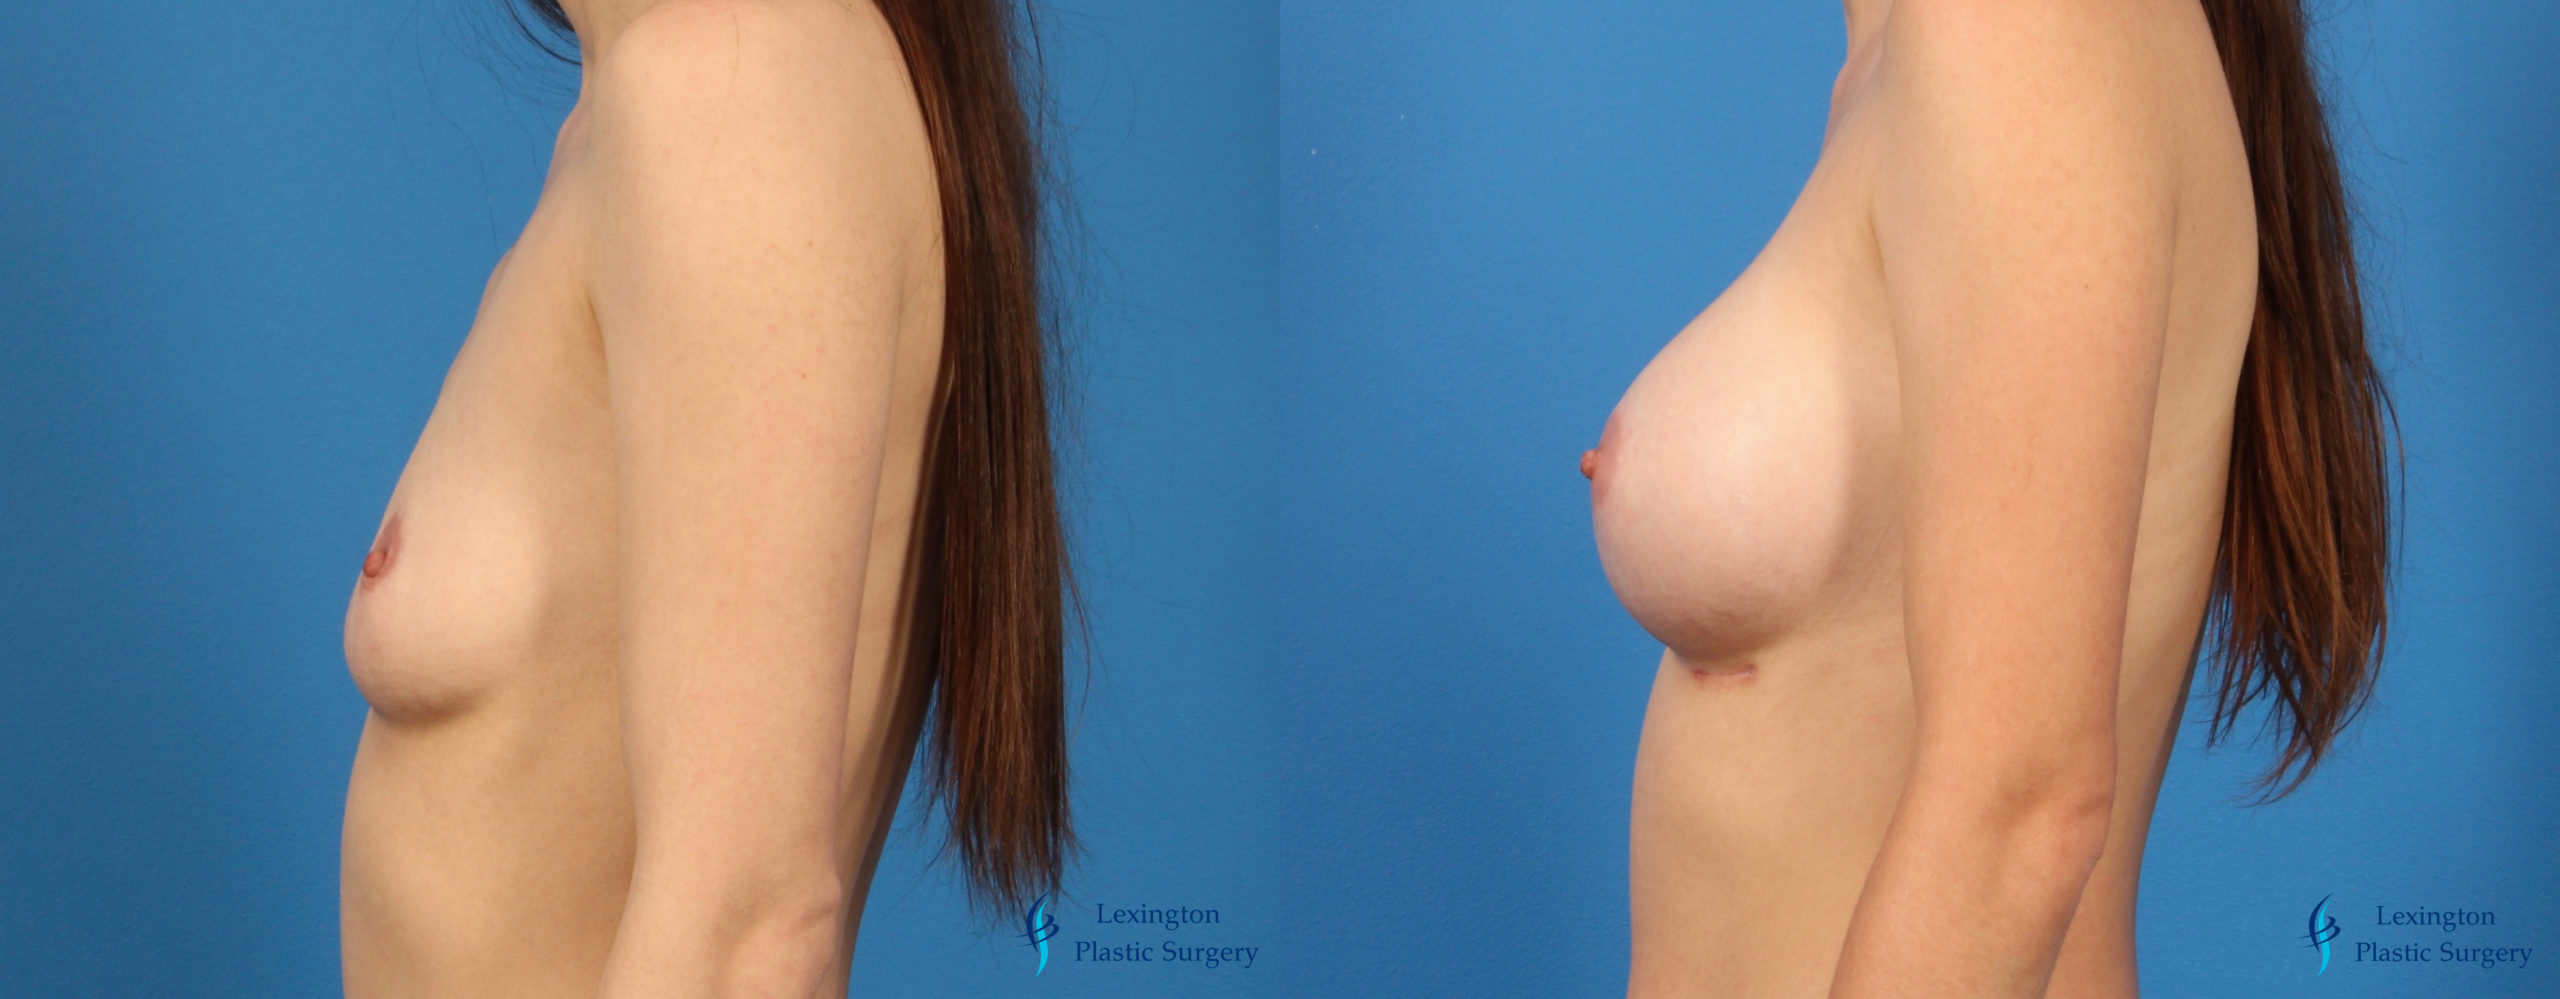 Breast Implant Exchange: Patient 1